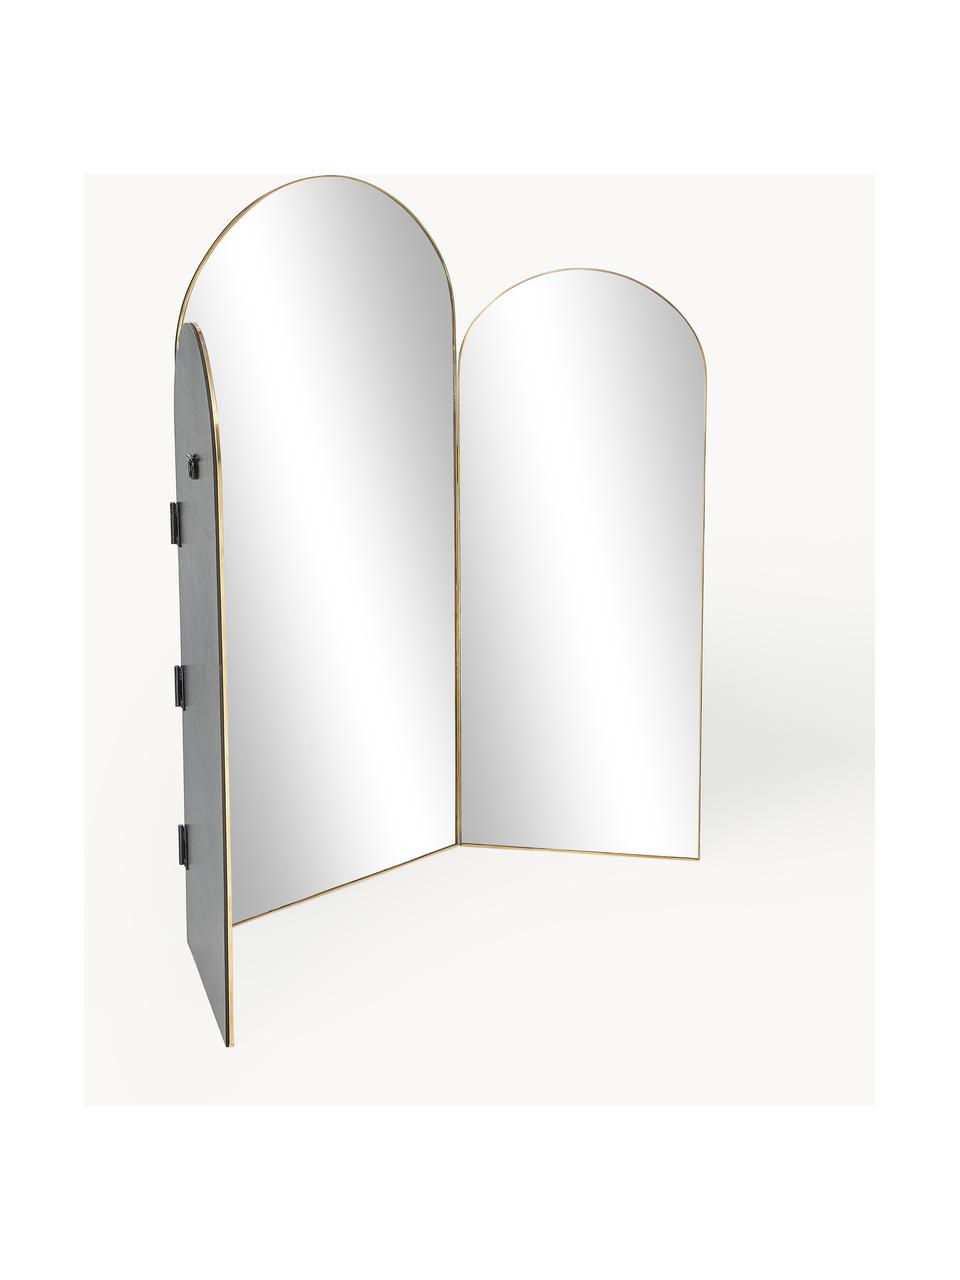 Trojité zrkadlo Maple, Zlatá, Š 88 x V 70 cm